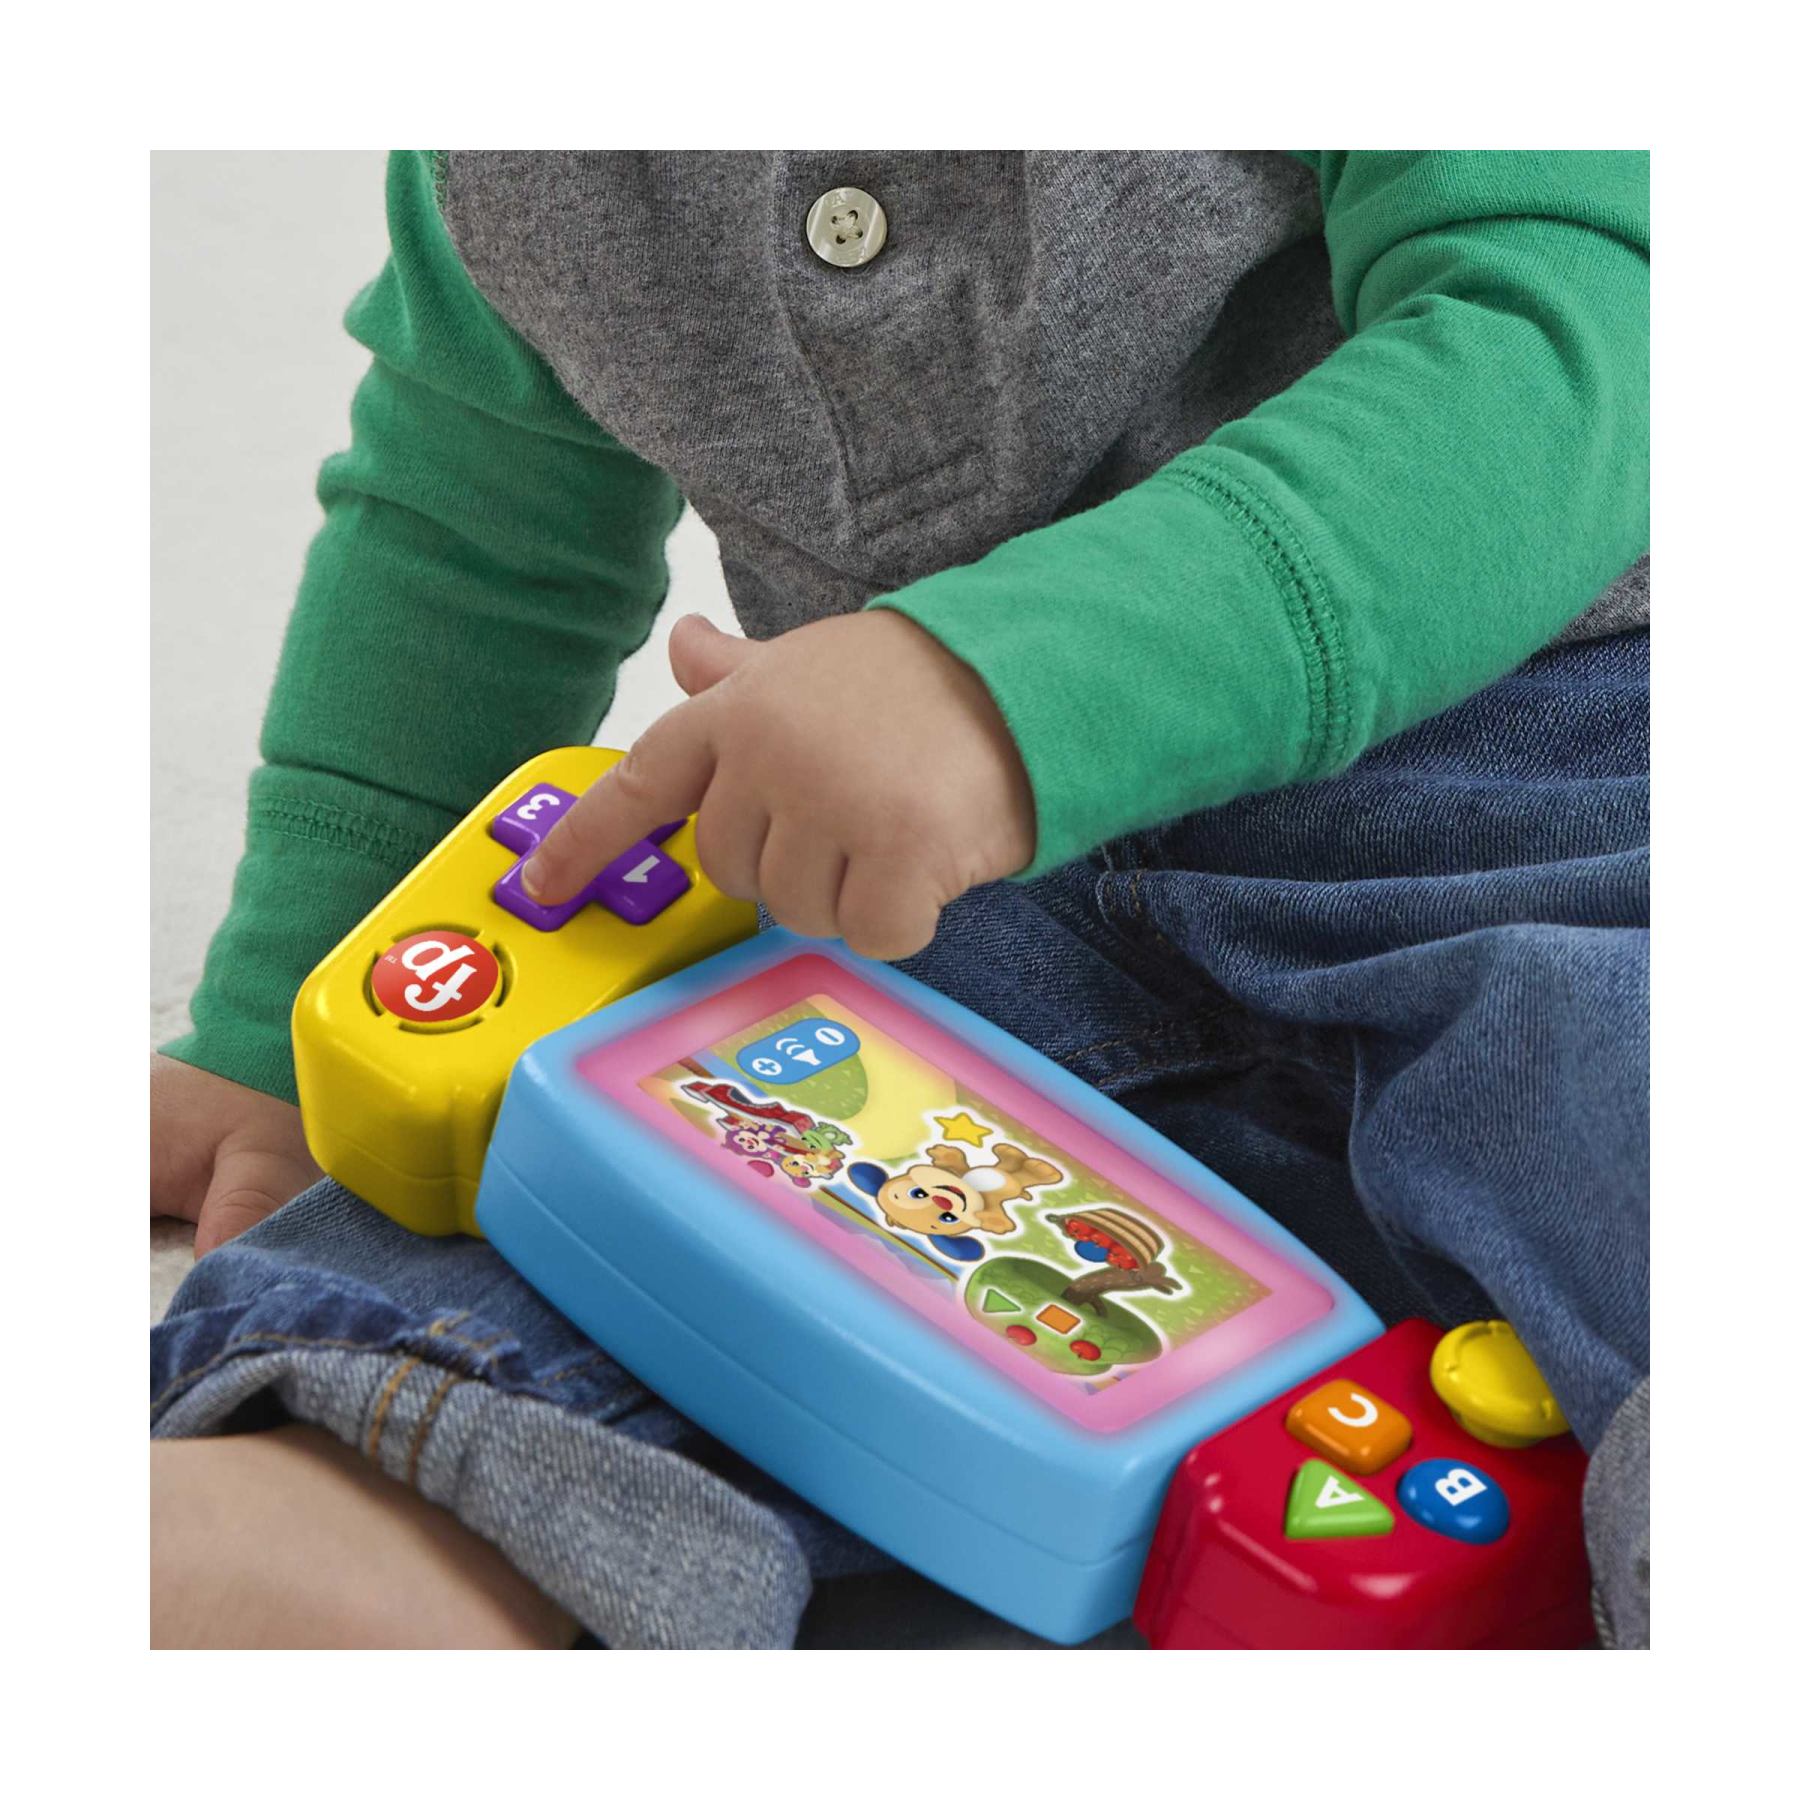 Fisher-price - console gira e impara, videogioco finto per bambini ai primi passi, con luci, suoni e canzoni educative, versione multilingue, giocattolo per bambini, 9-36 mesi, hnl52 - FISHER-PRICE